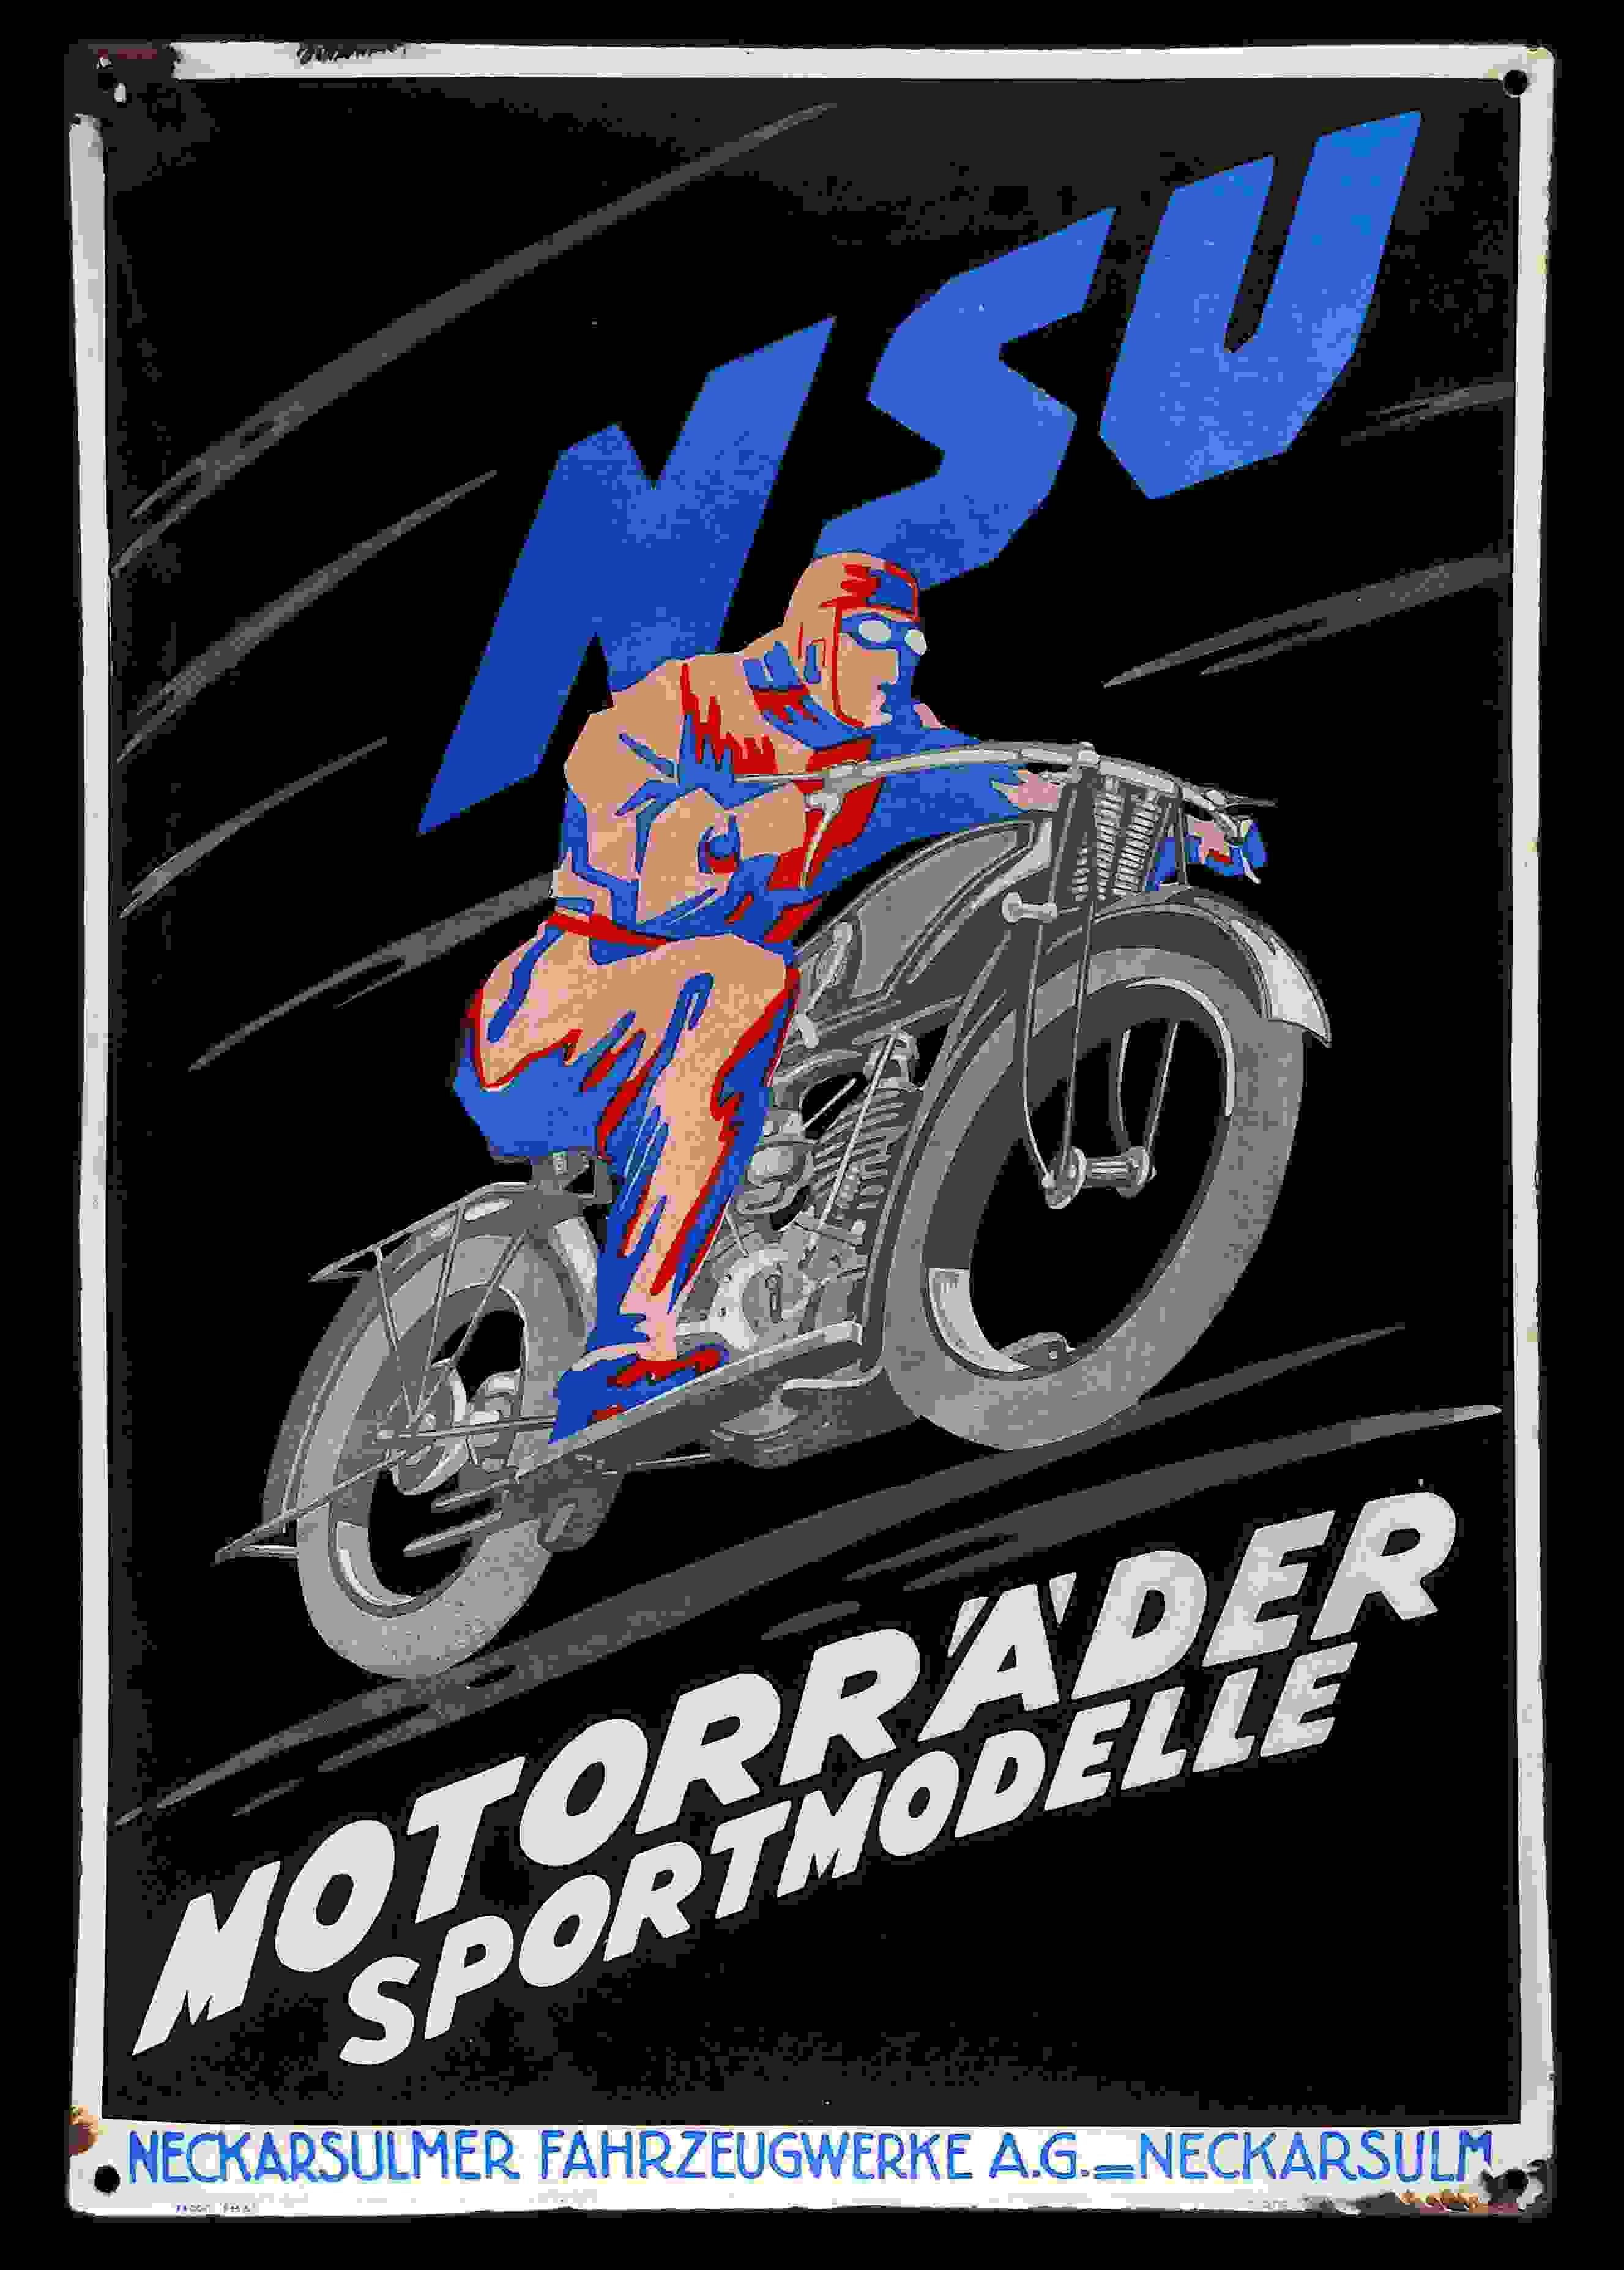 NSU Motorräder Sportmodelle 